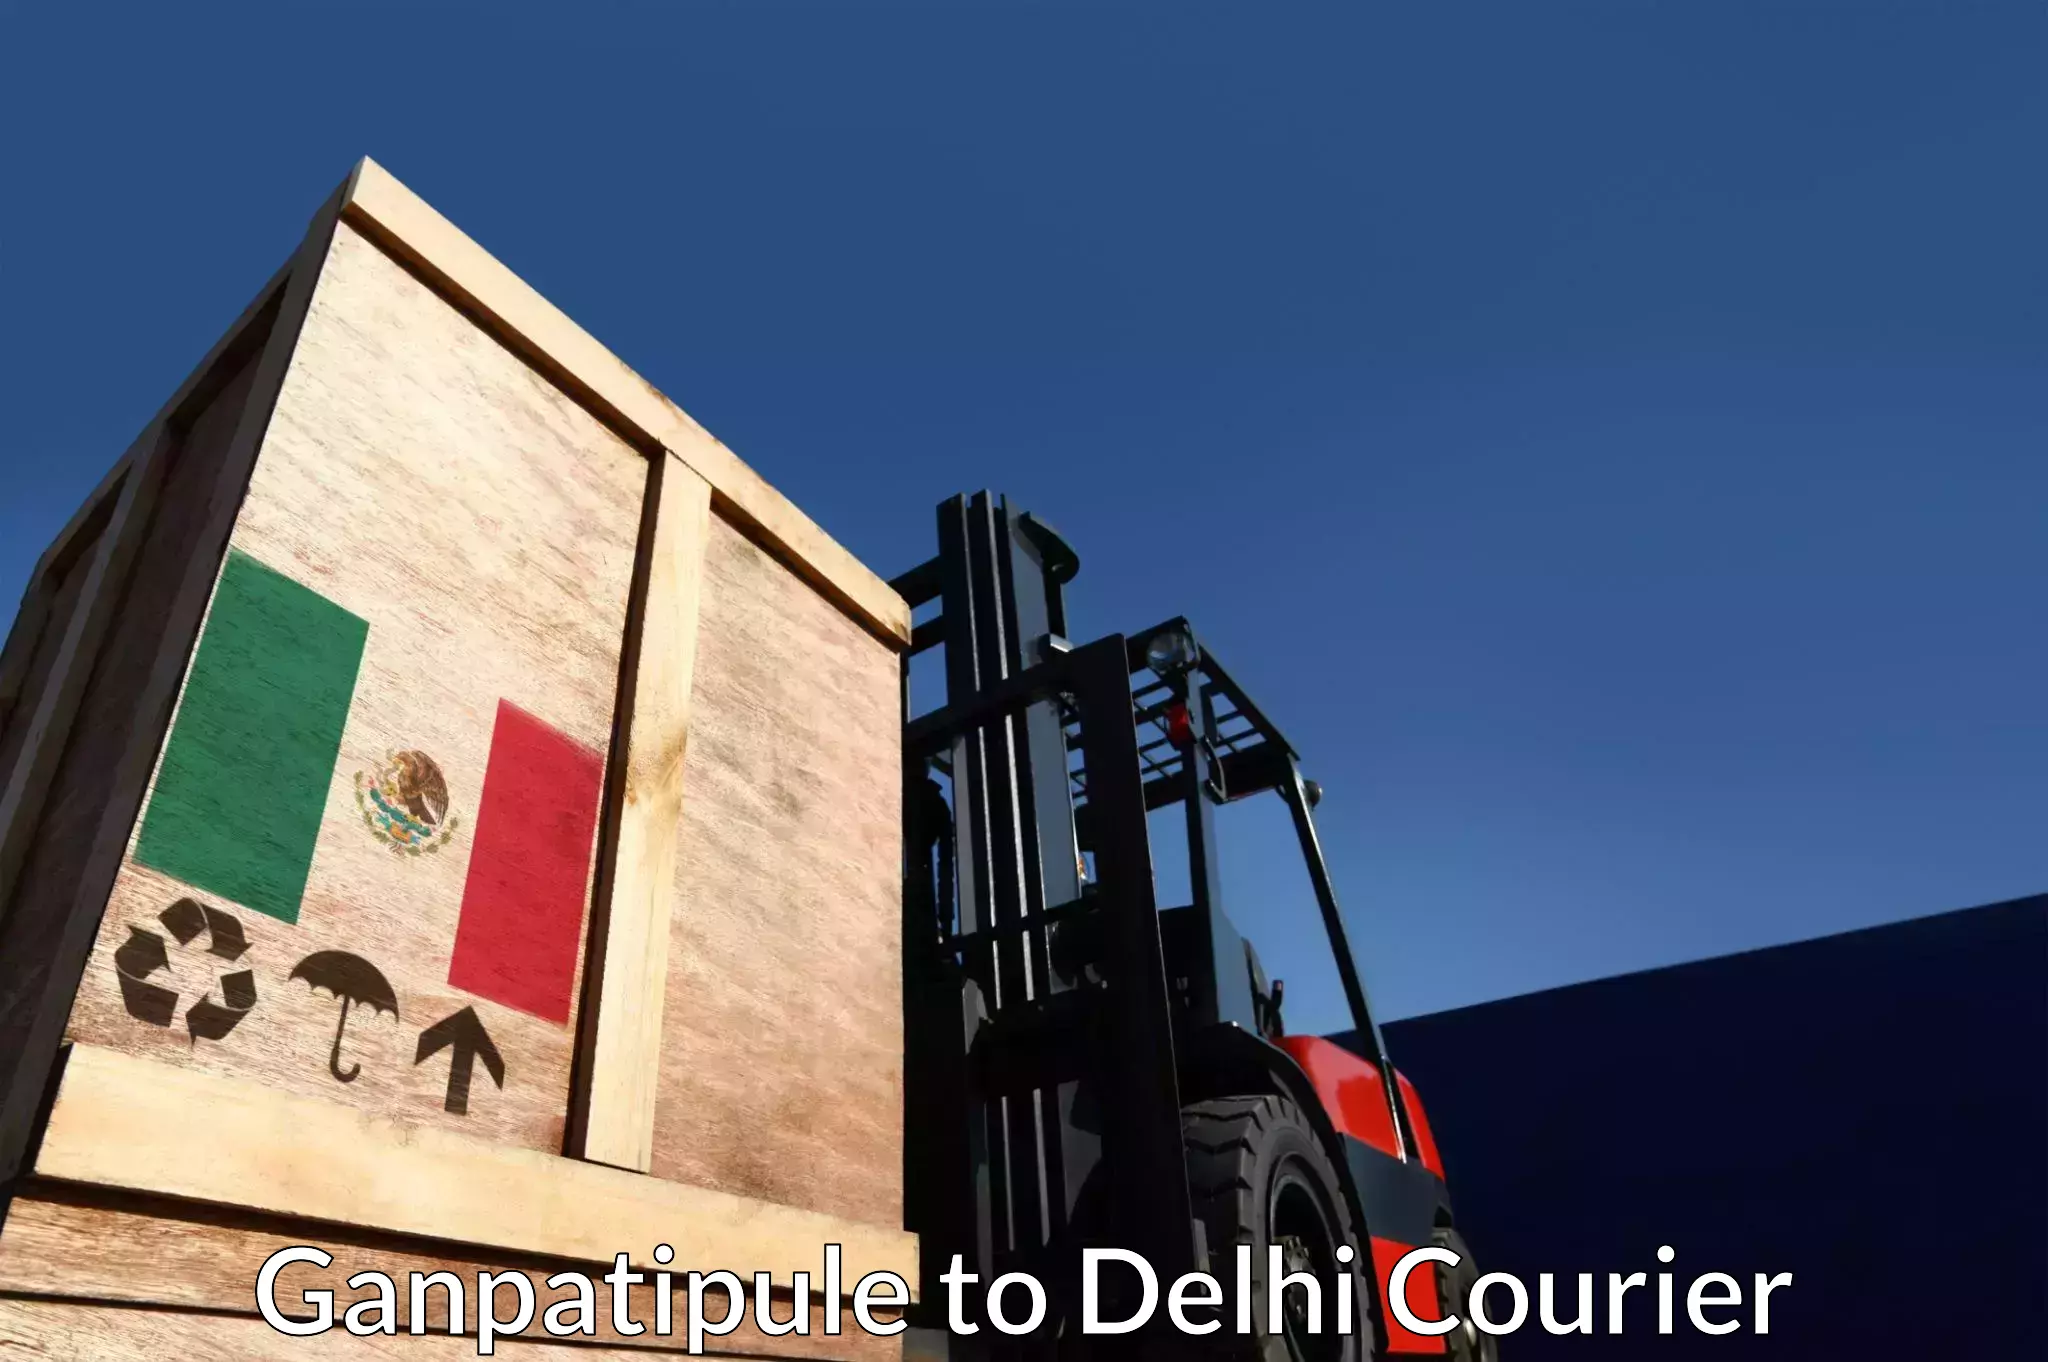 Urgent courier needs Ganpatipule to Delhi